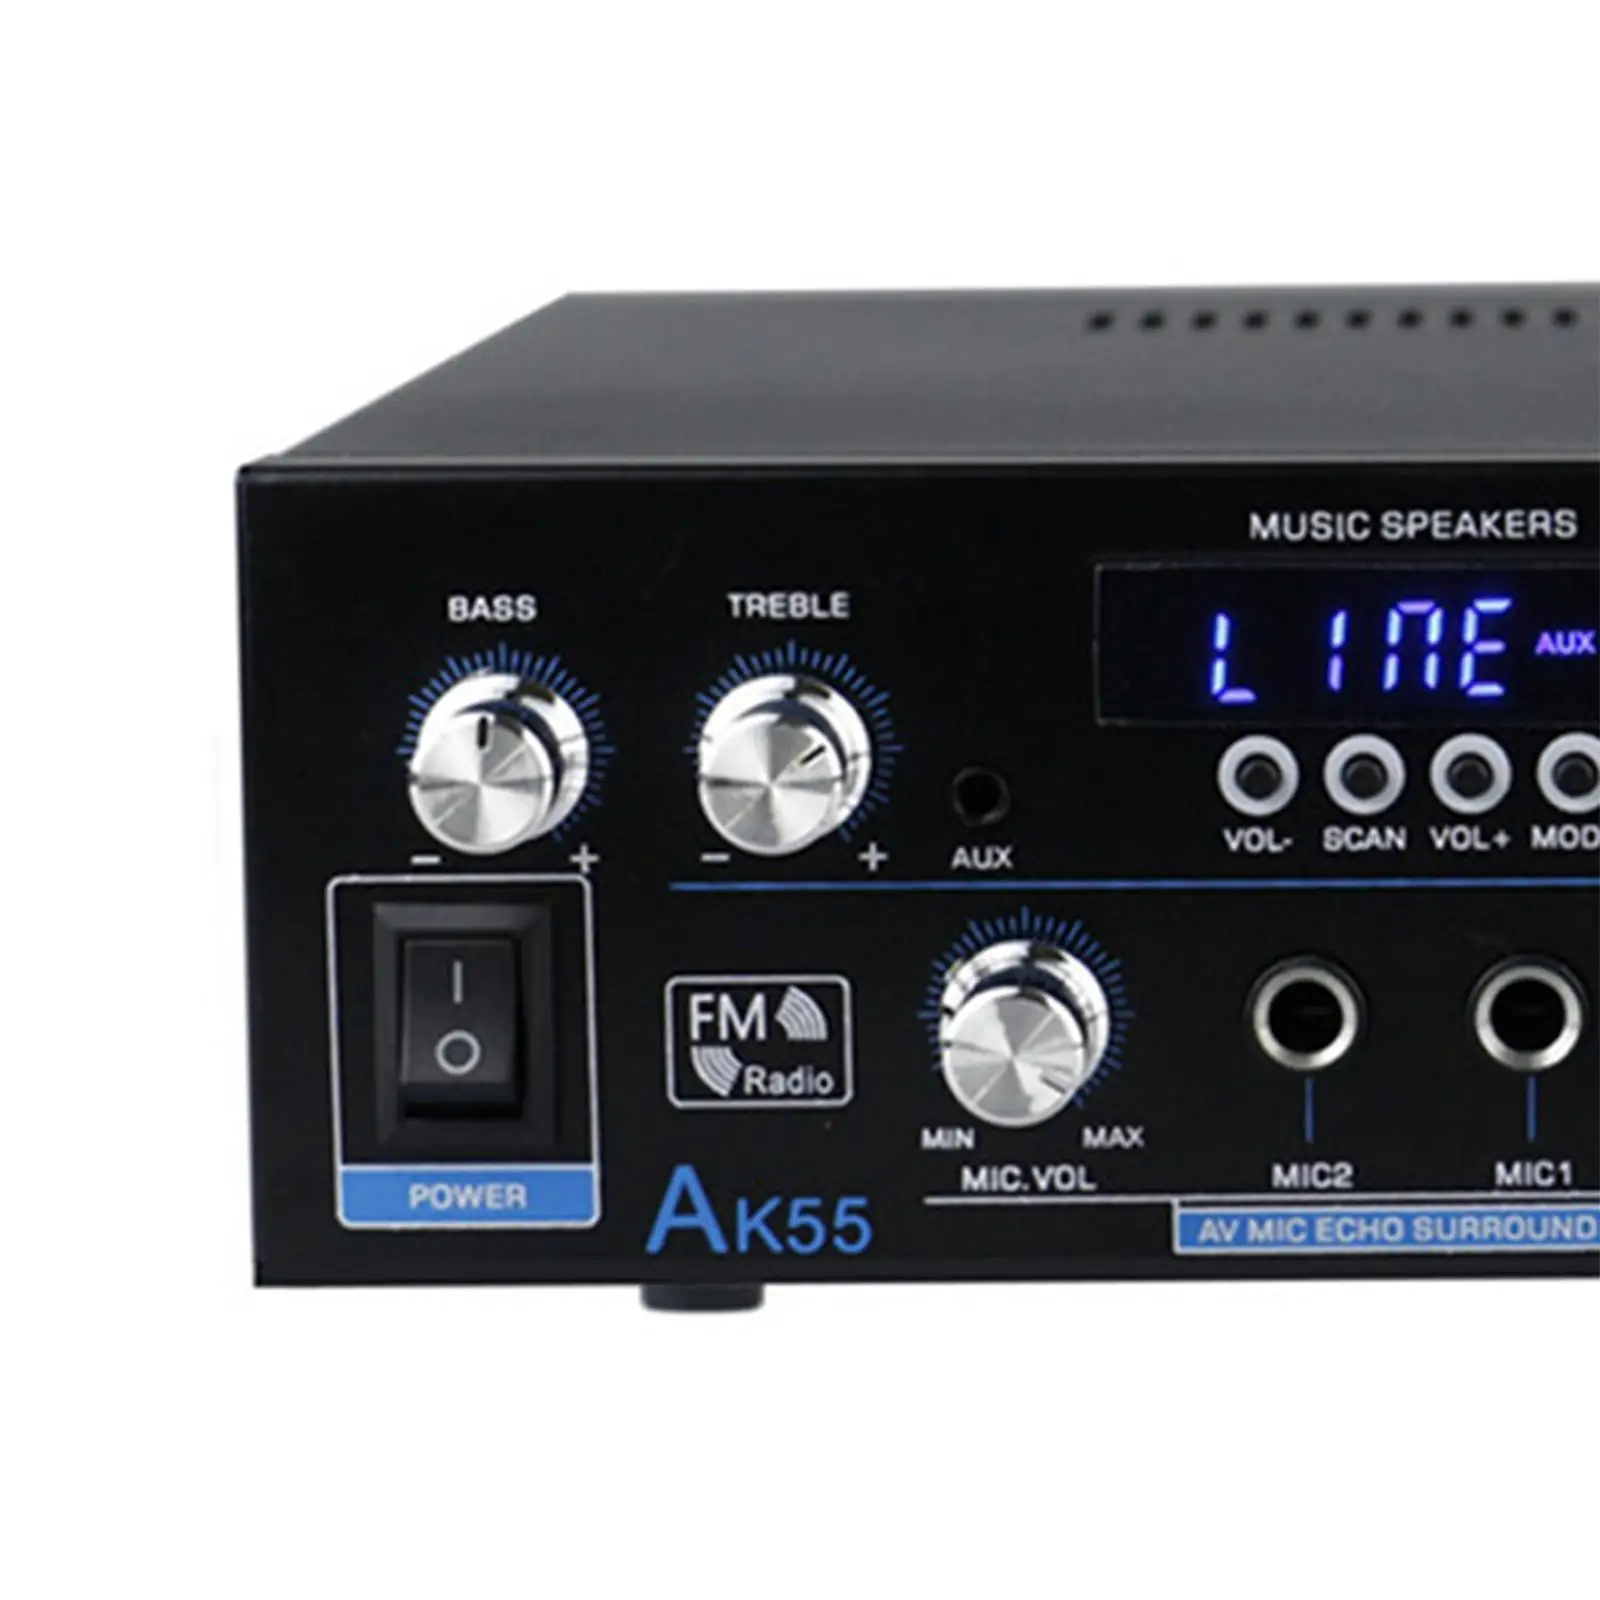 AK-55 Amplifier Echo Reverb Delay Dual Channel Mini HiFi Stereo Amp Speaker Portable Sound Amplifier Speaker Amplifier US